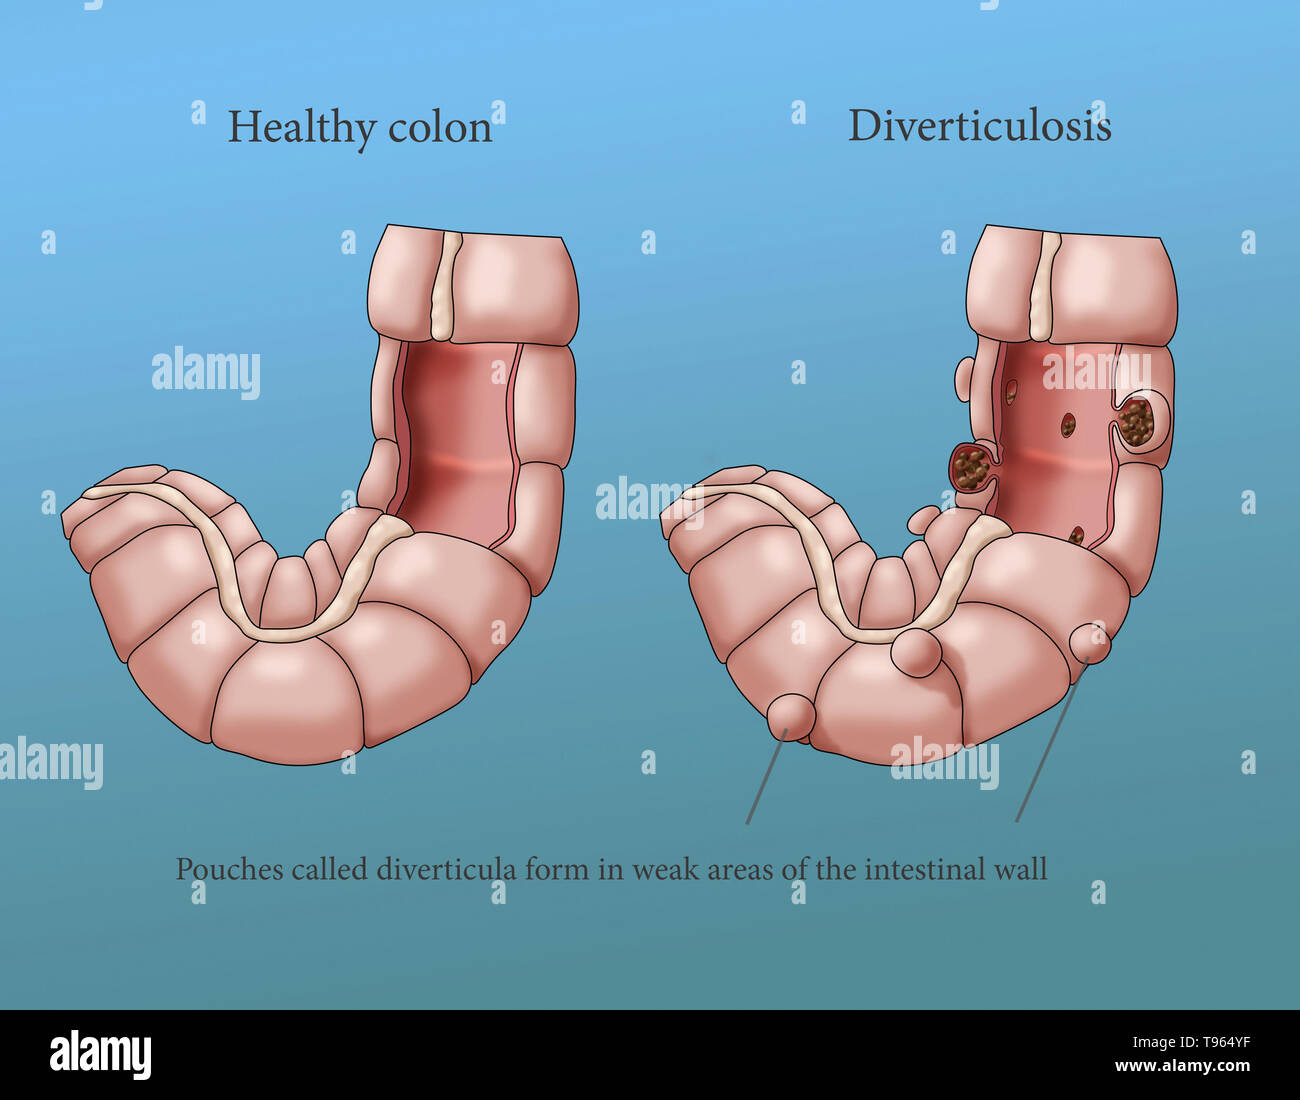 Abbildung: Vergleich der Darstellung eines gesunden Doppelpunkt (Links) zu einem Mit diverticulosis (rechts). Stockfoto